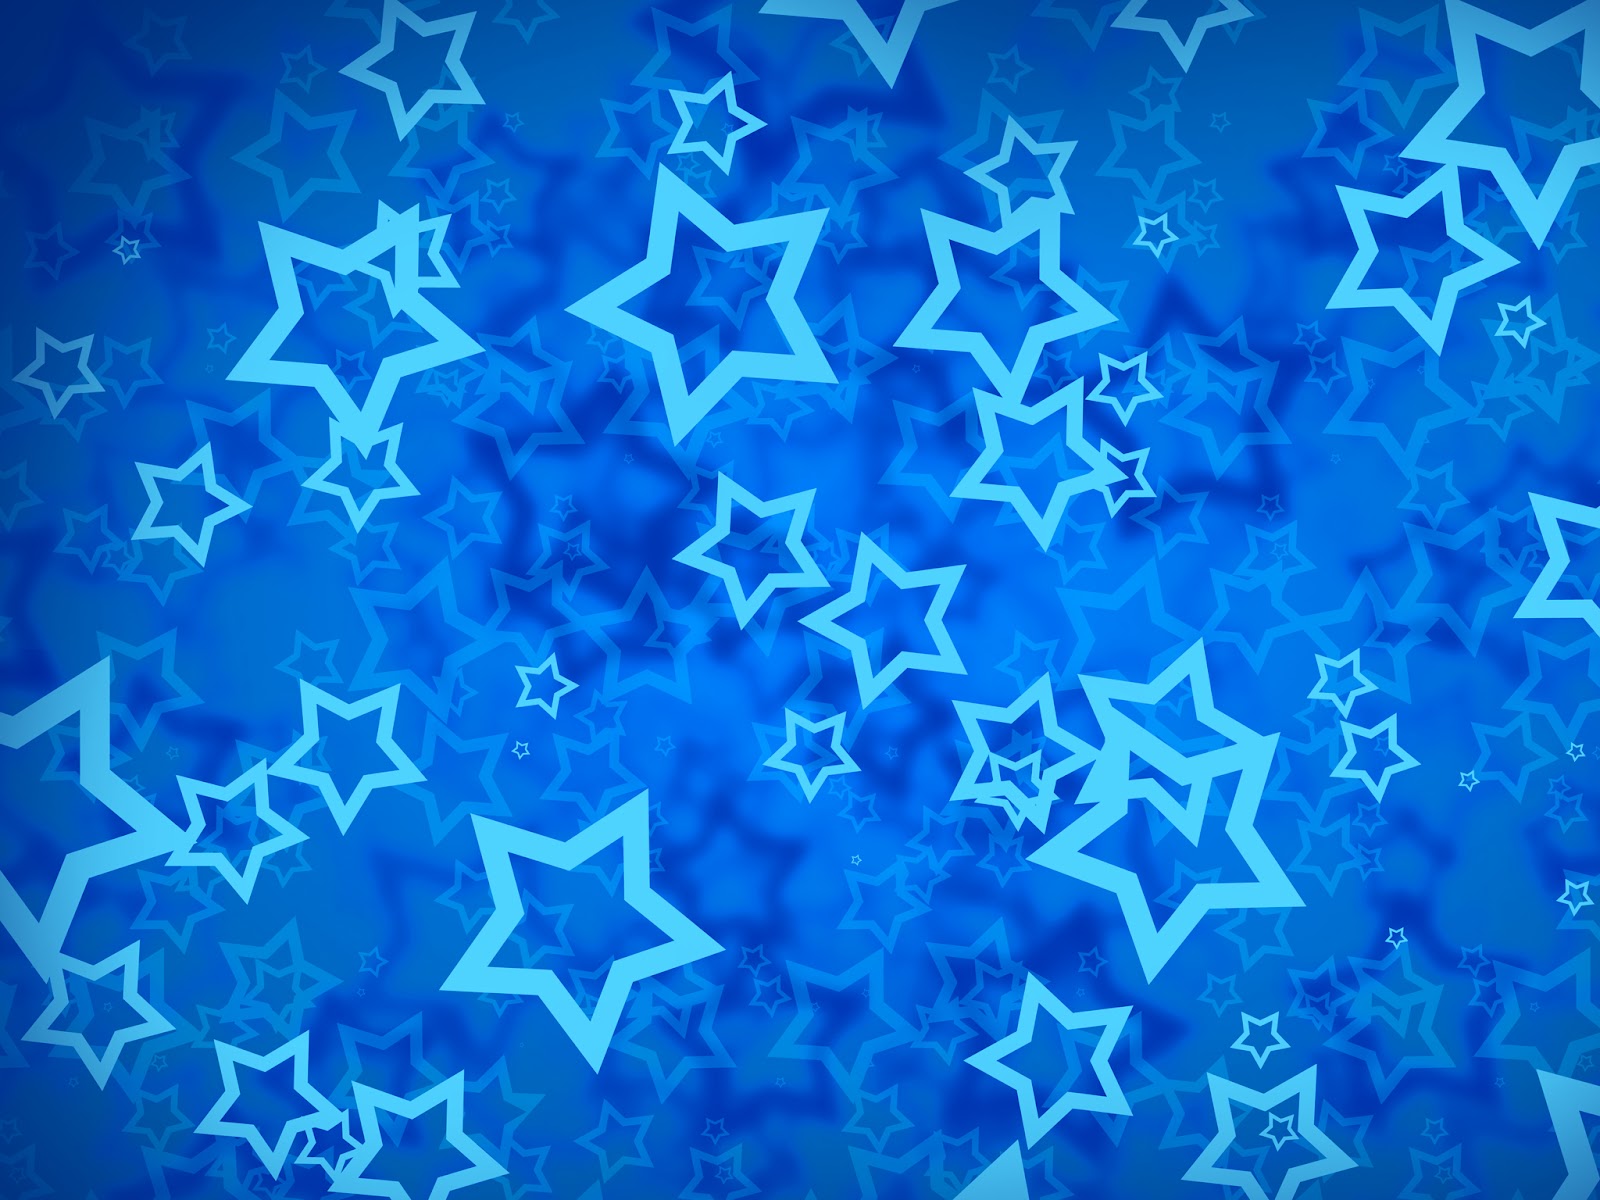 溶岩アイリスのhdの壁紙,コバルトブルー,青い,エレクトリックブルー,マジョレルブルー,パターン